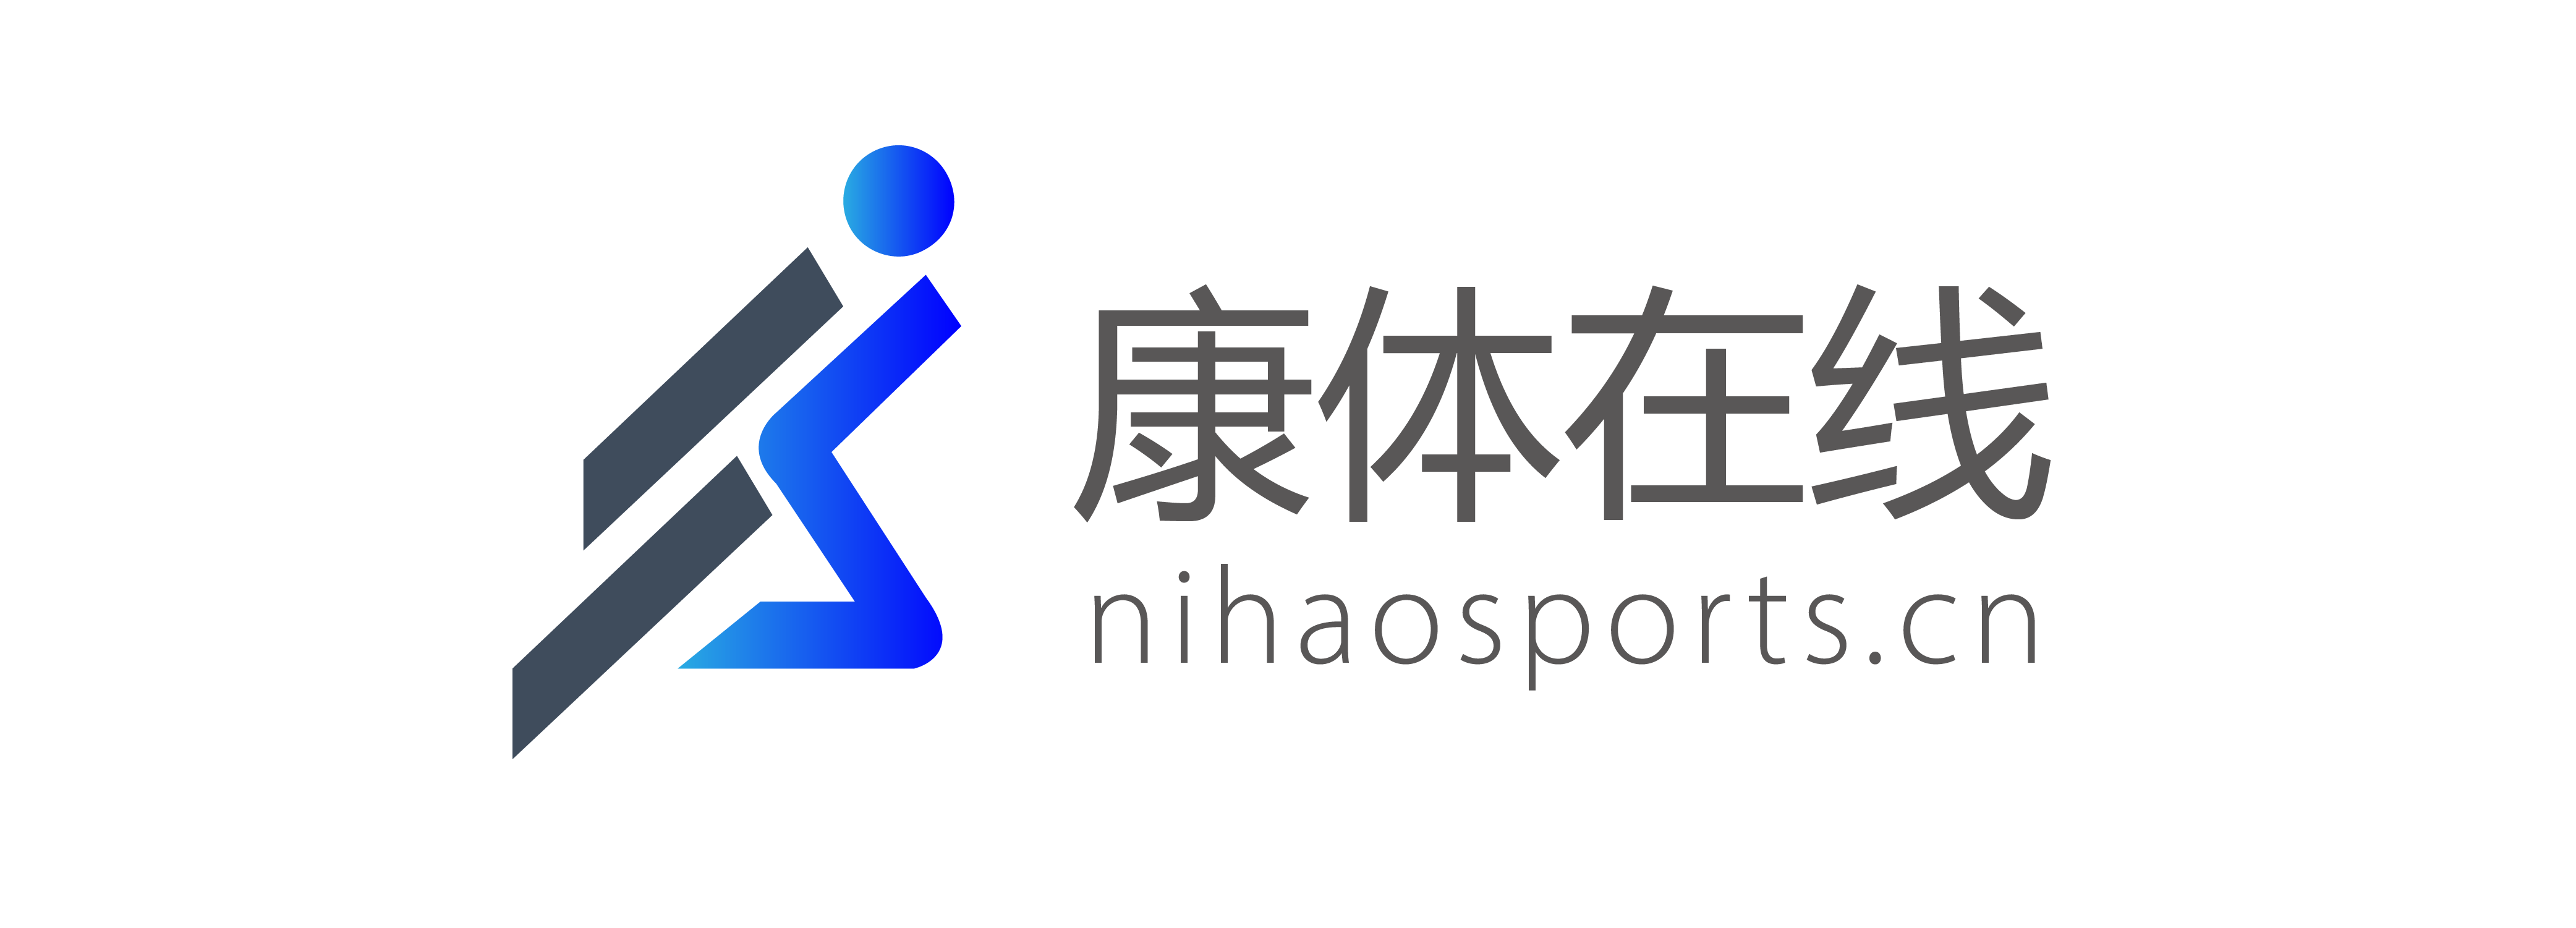 B2B-Anlagenform – Nihaosports